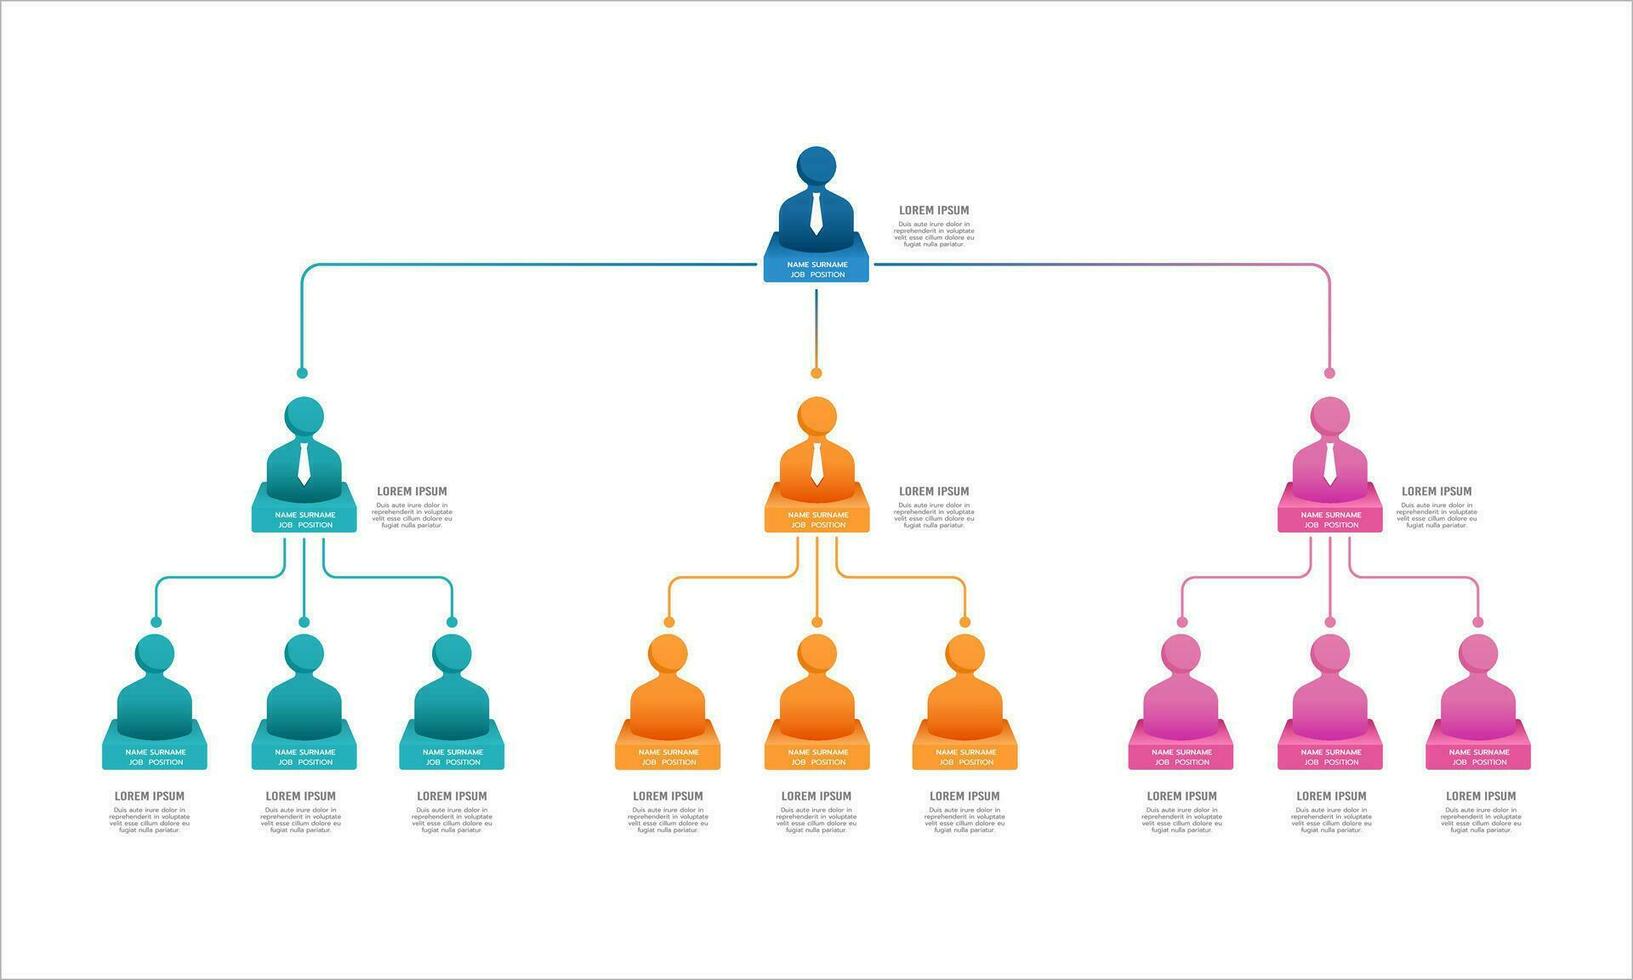 Geschäft Organisation Diagramm zeigt an das Namen und Positionen innerhalb das Organisation. Vektor Illustration.